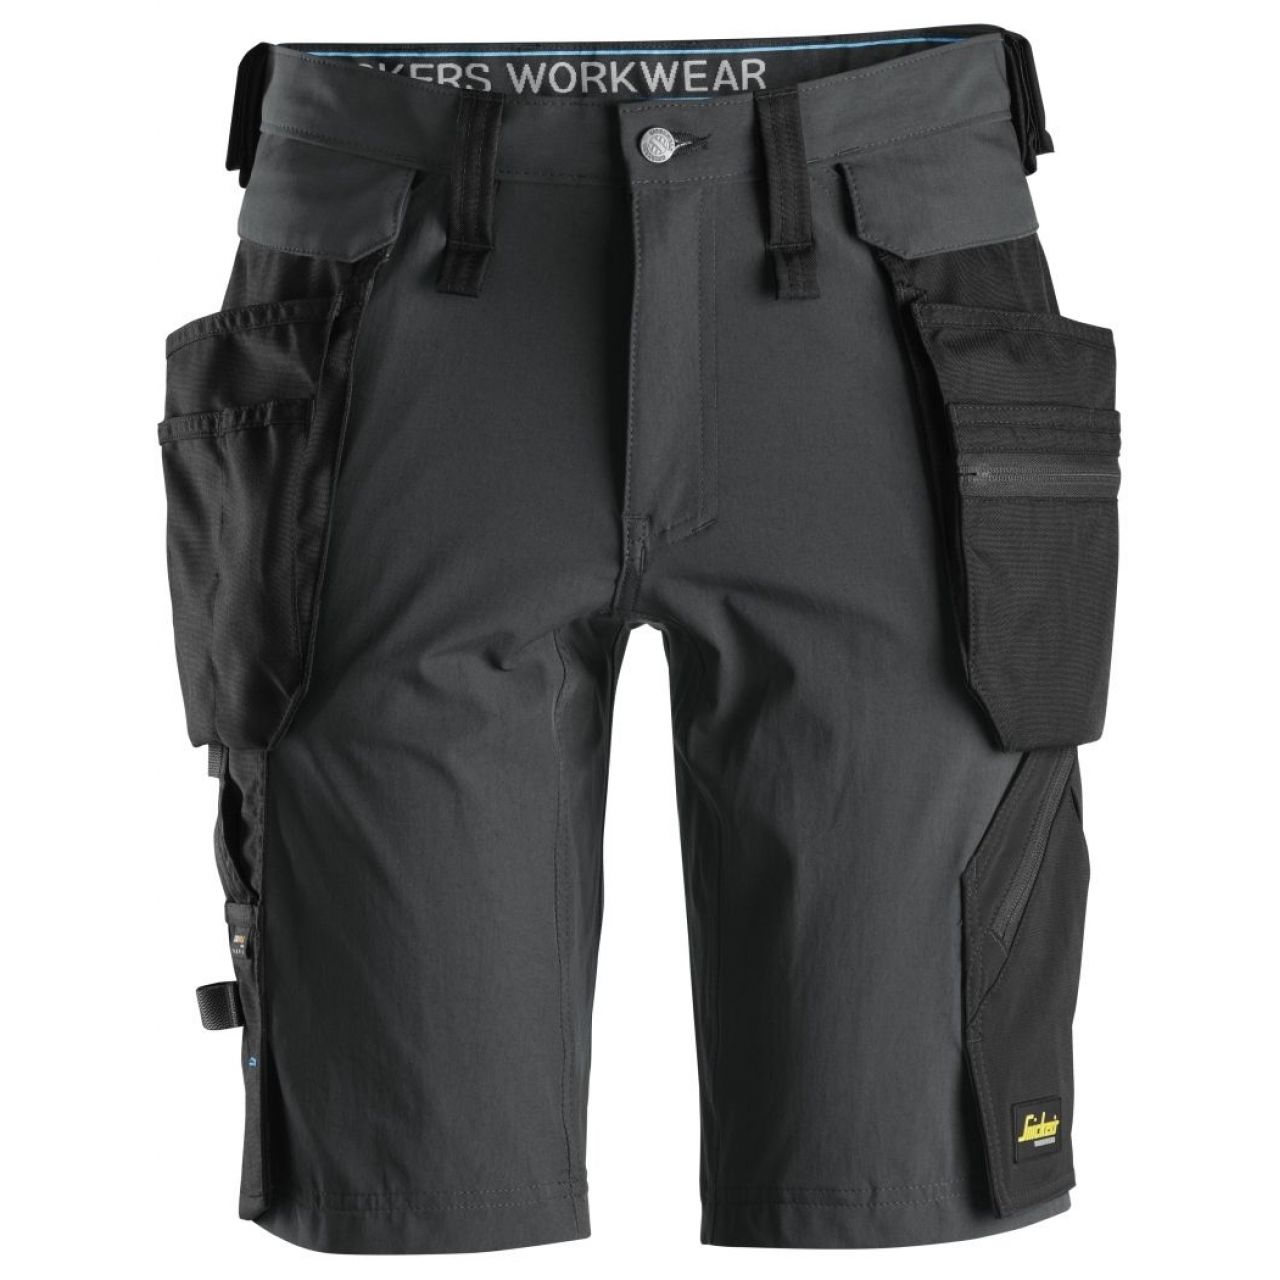 Pantalon corto + bolsillos flotantes desmontables LiteWork gris acero-negro talla 050